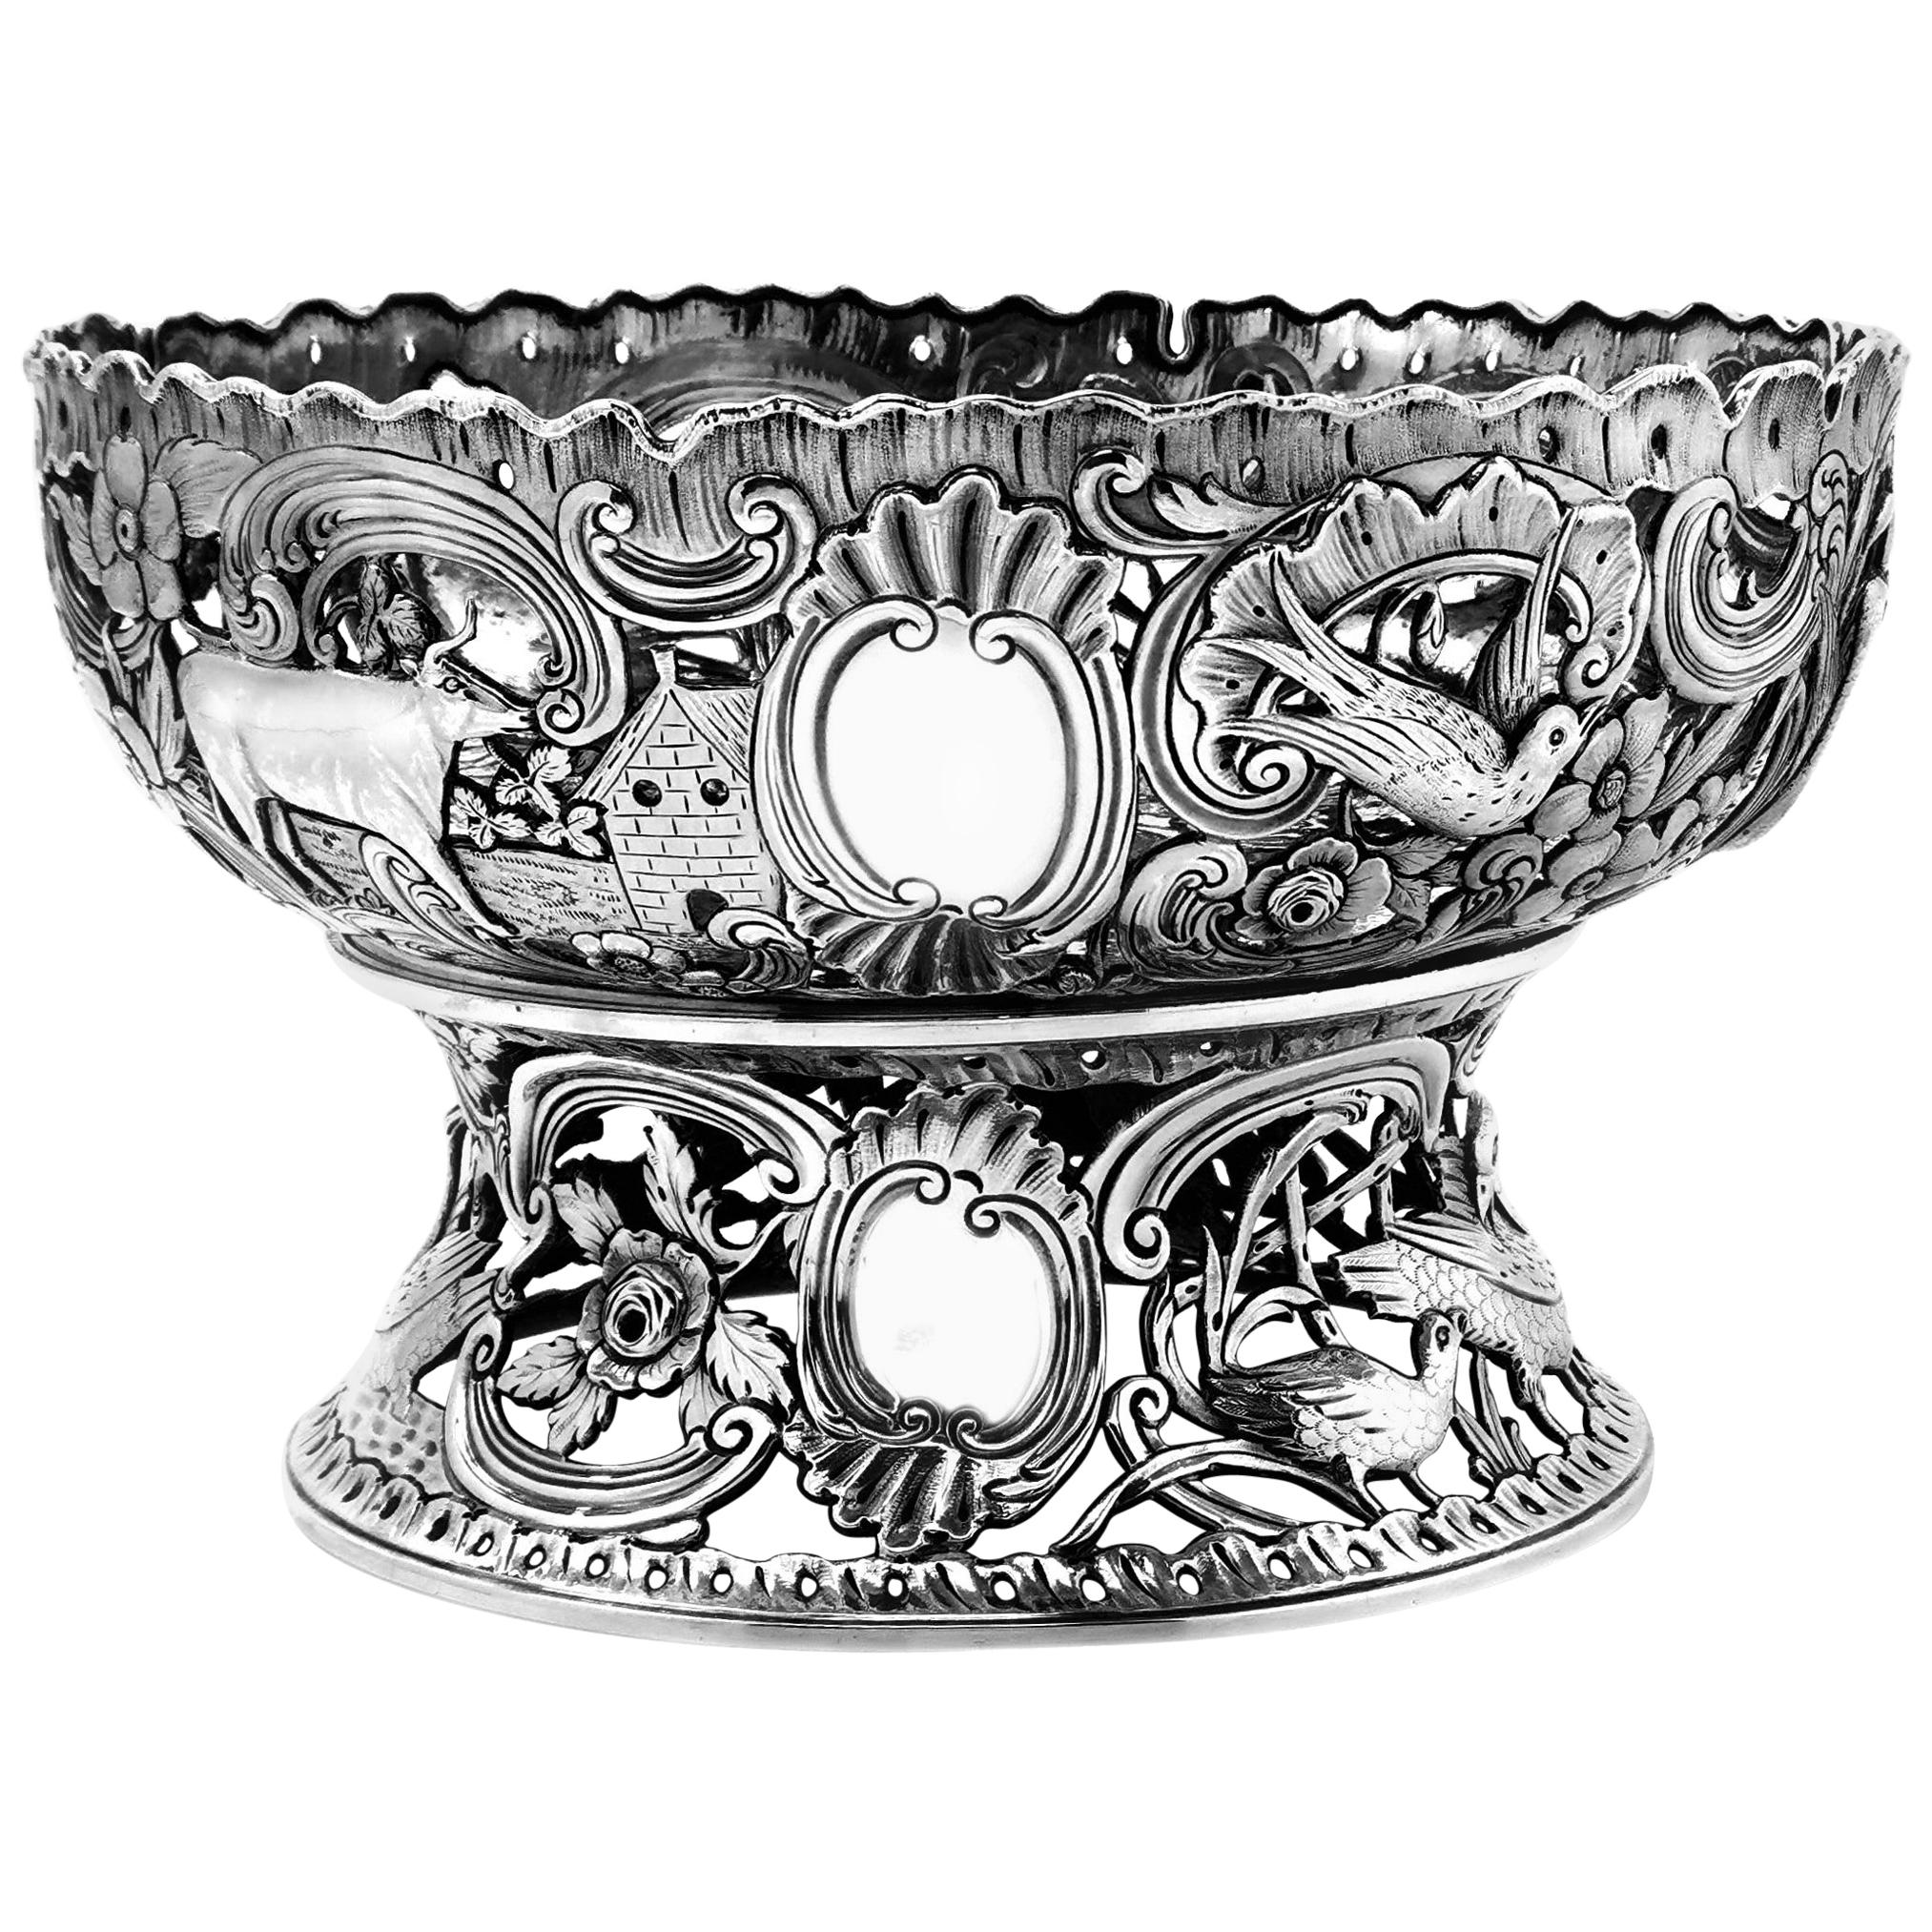 Grand anneau de plat et bol victorien ancien en argent de style géorgien irlandais 1900